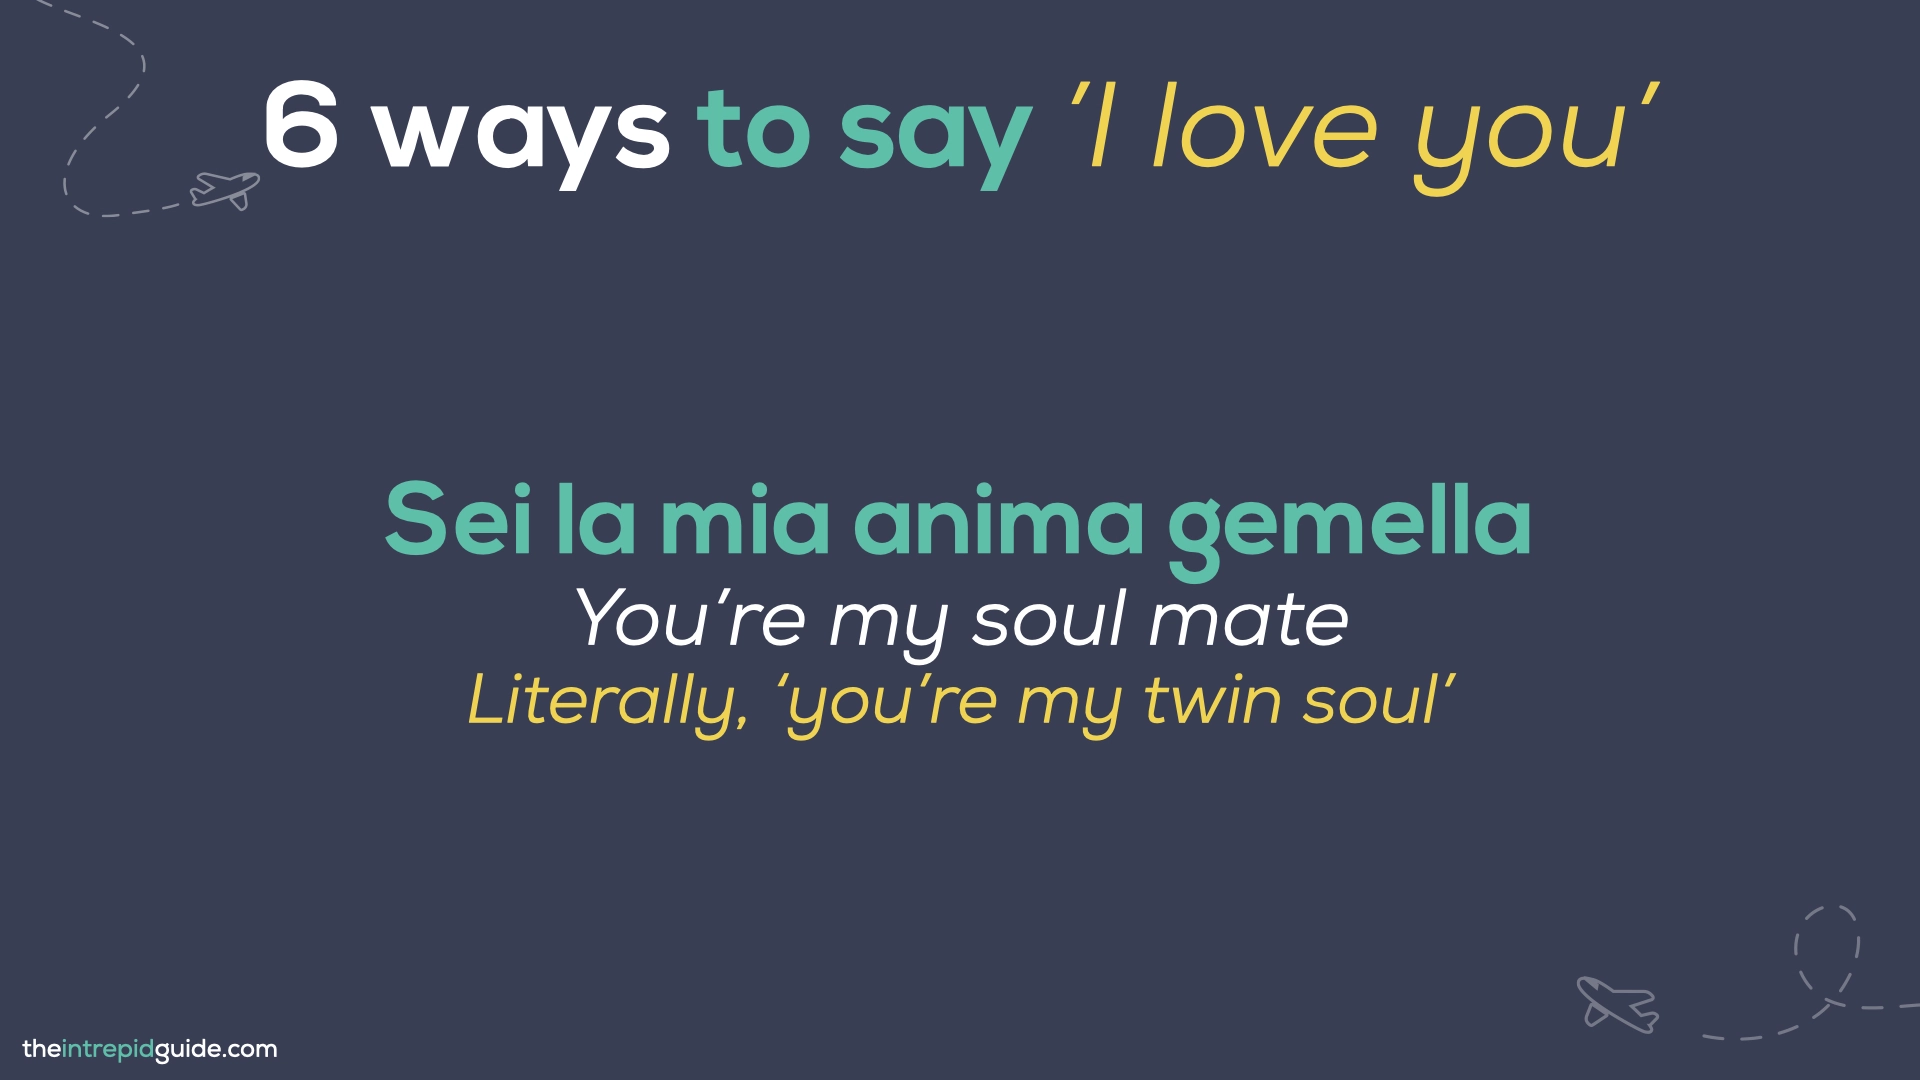 How to say 'I love you' in Italian - Sei la mia anima gemella